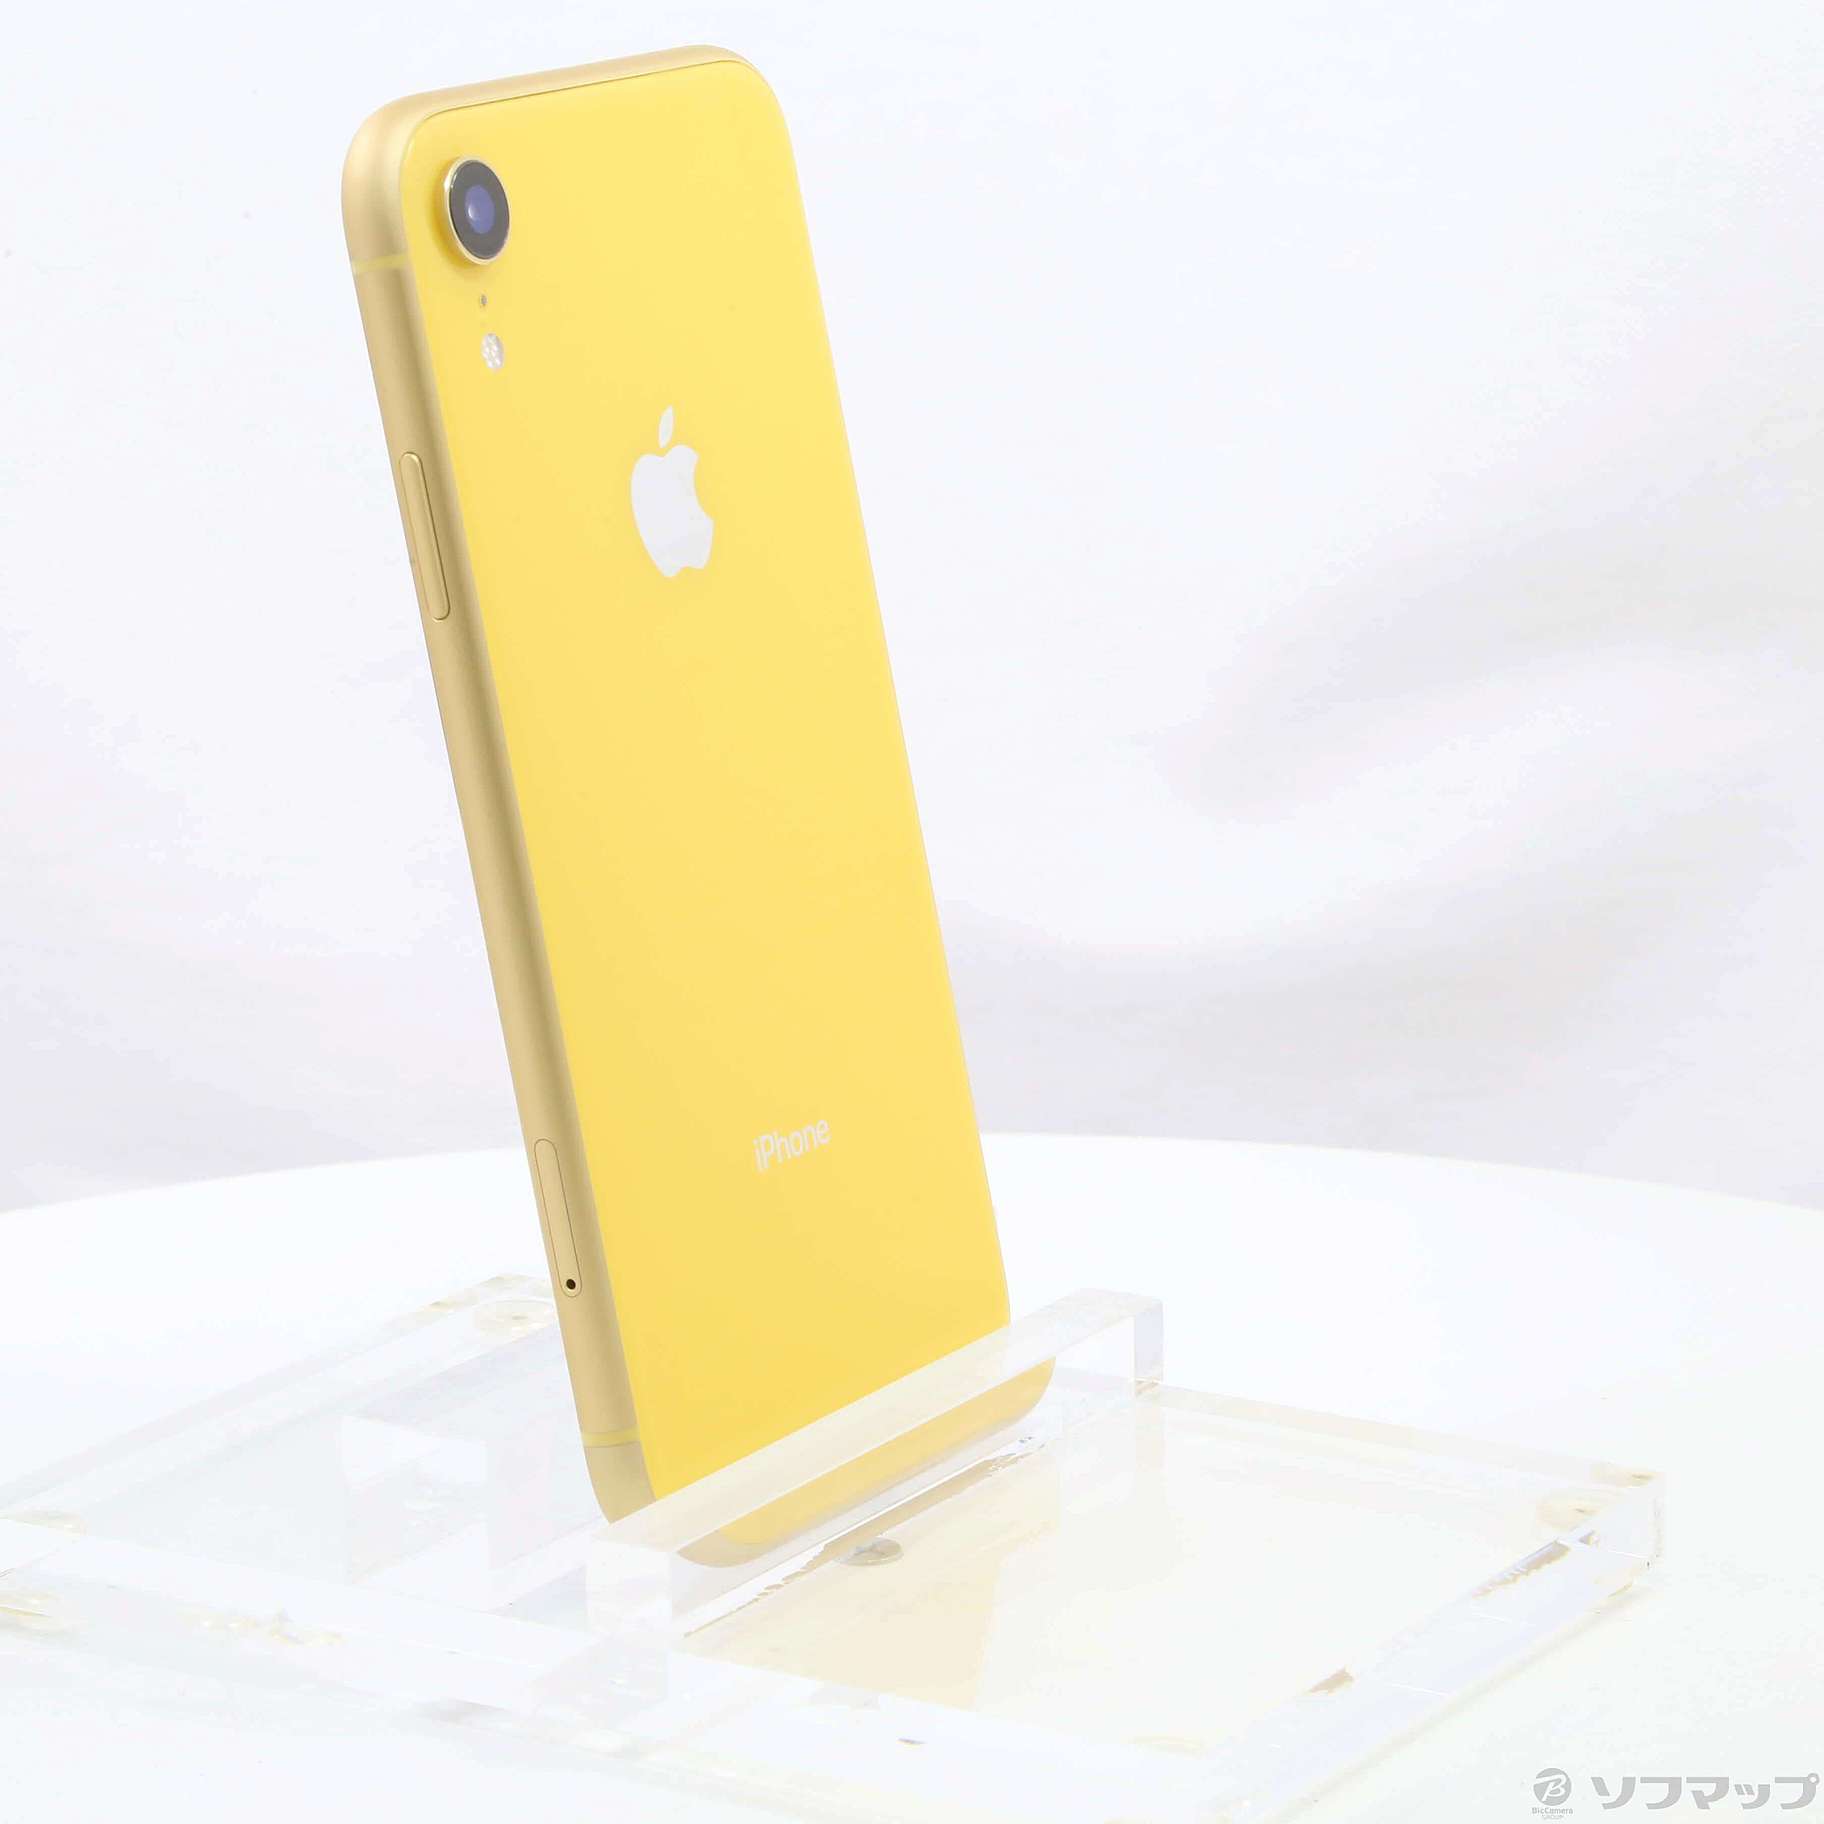 のある iPhone - 美品 iPhoneXR SIMフリー イエロー 64GB 付属品全ありの通販 by ryuichi z's shop